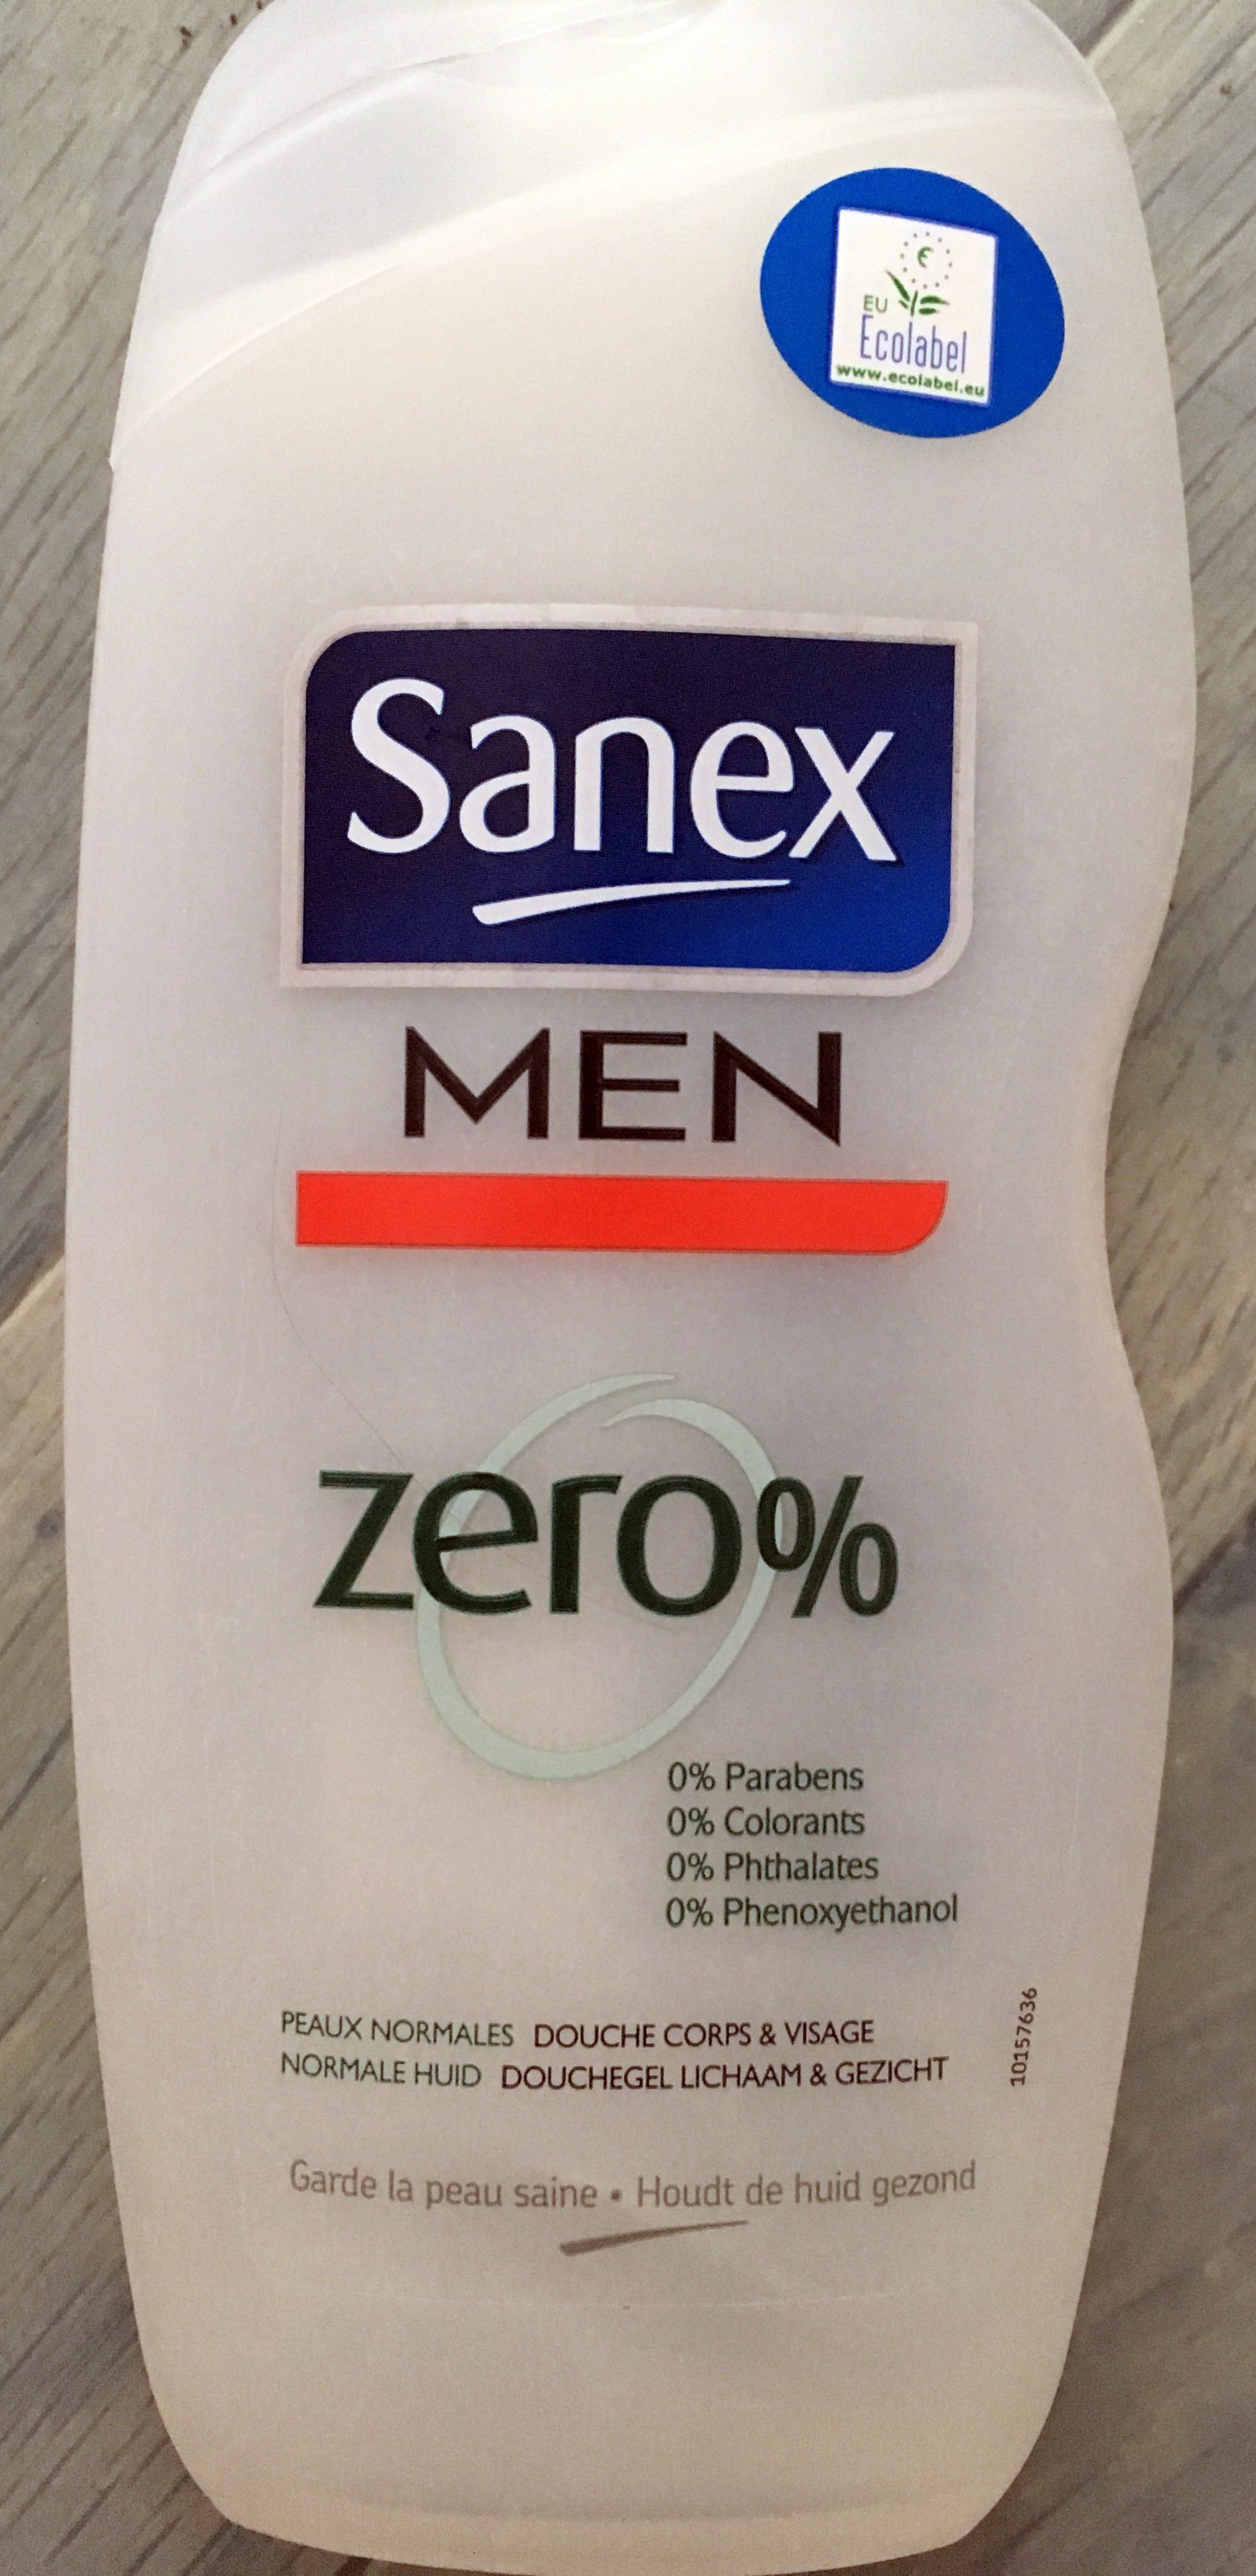 Sanex Men Zéro % - Product - en